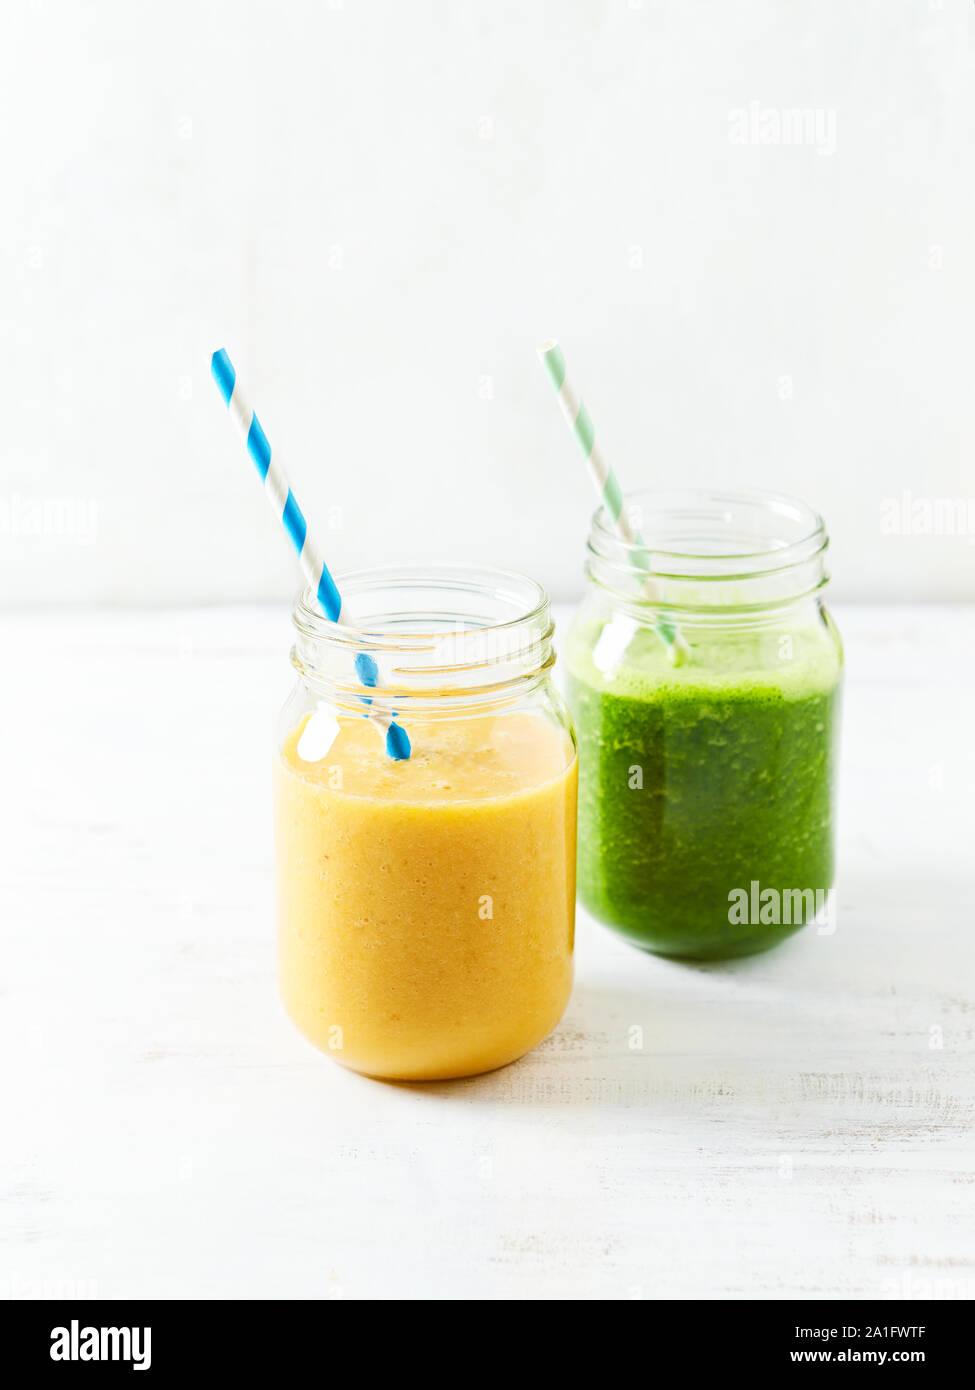 Banana-arancio e banana-kale smoothie in bicchieri. Immagine simbolica. Concetto di alimentazione sana. Sfondo bianco. Copia dello spazio. Foto Stock